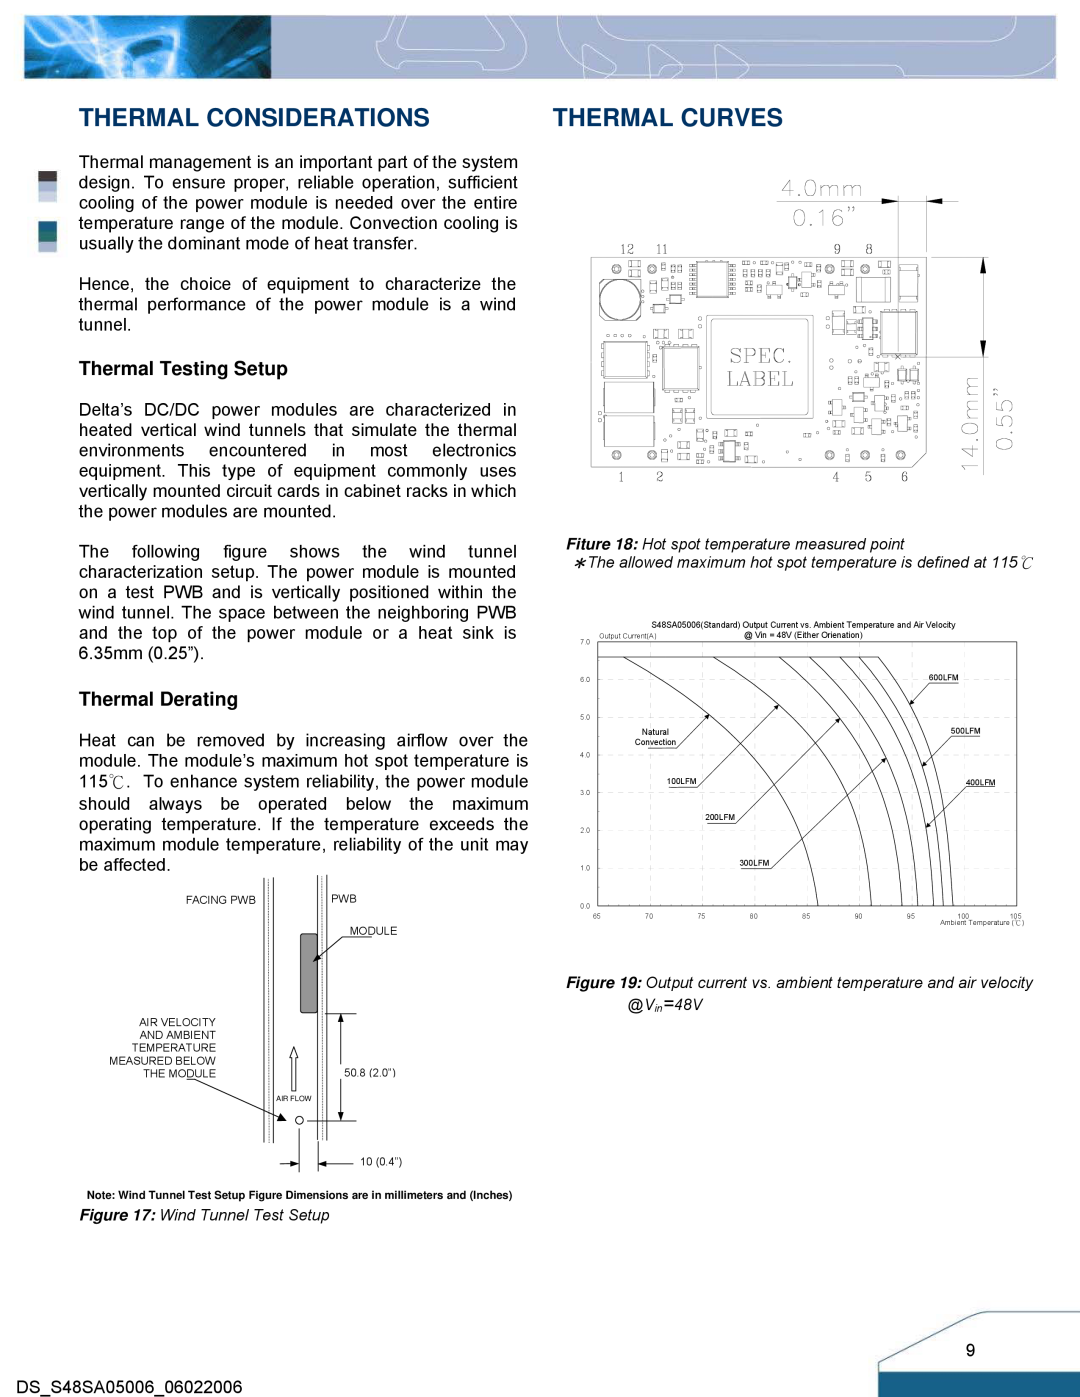 Delta Electronics S48SA manual Thermal Considerations, Thermal Curves, Thermal Testing Setup, Thermal Derating 